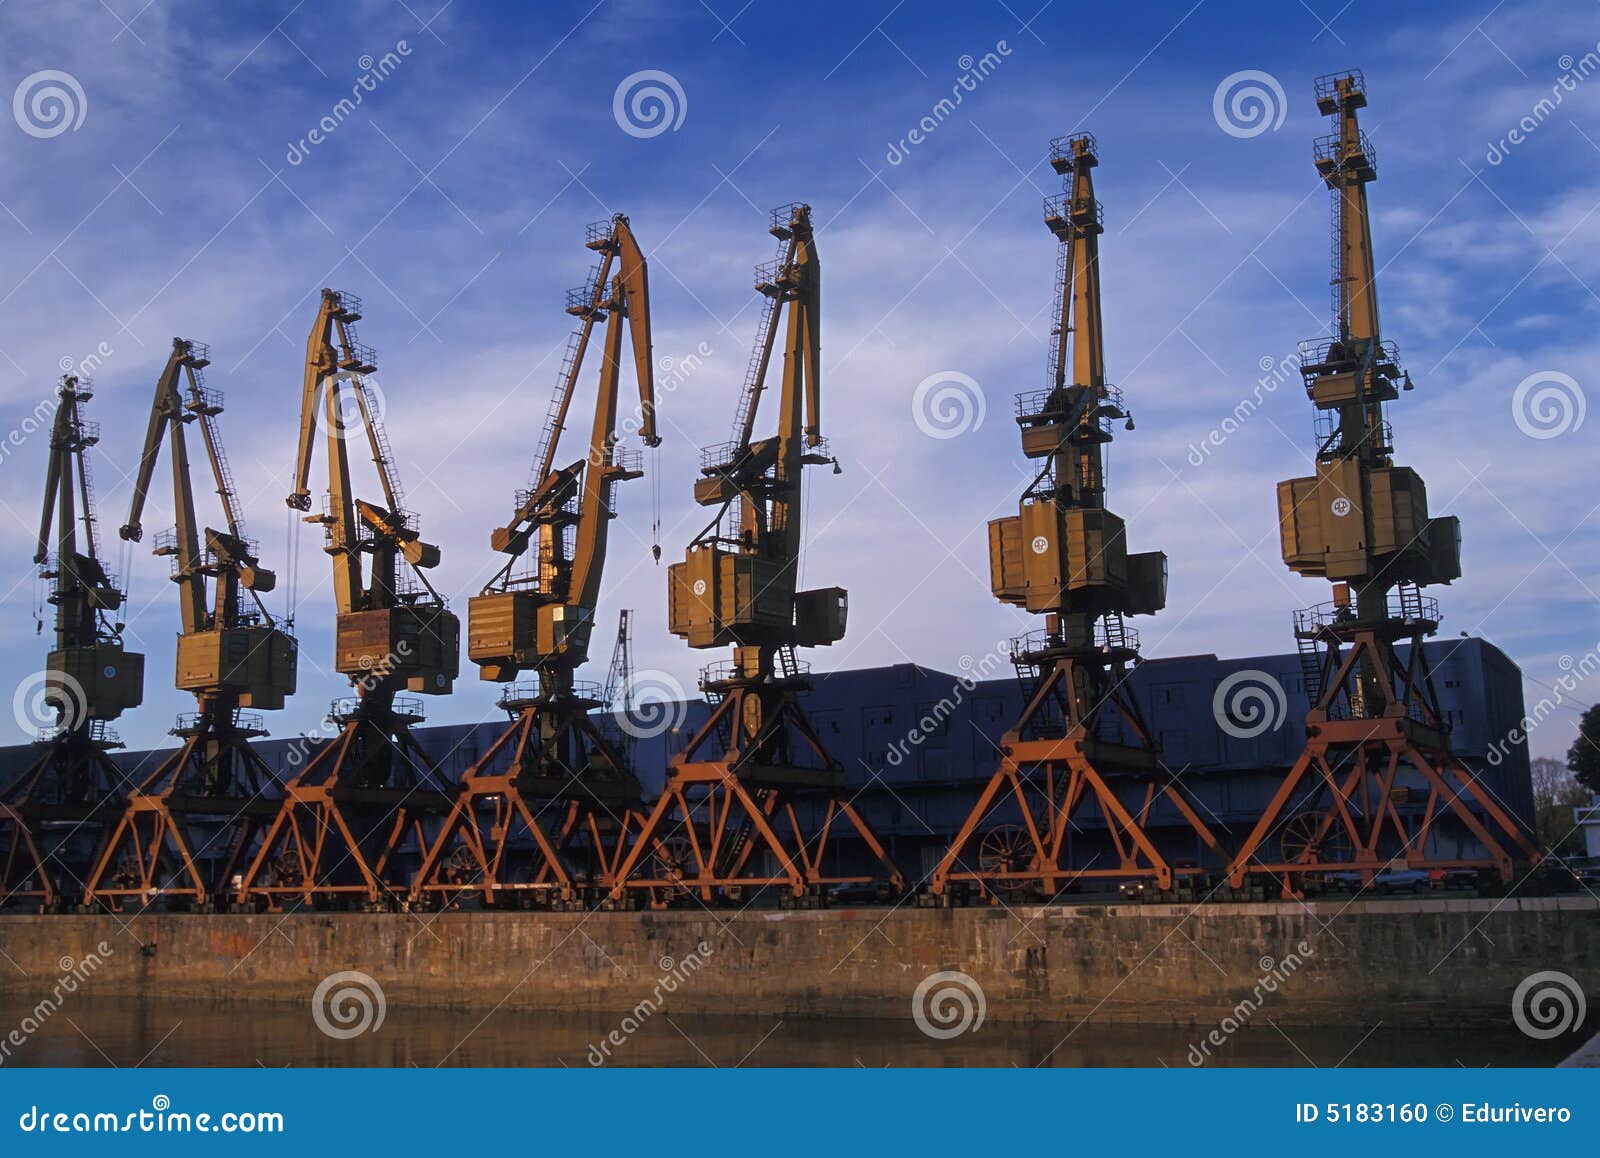 cranes at puerto madero